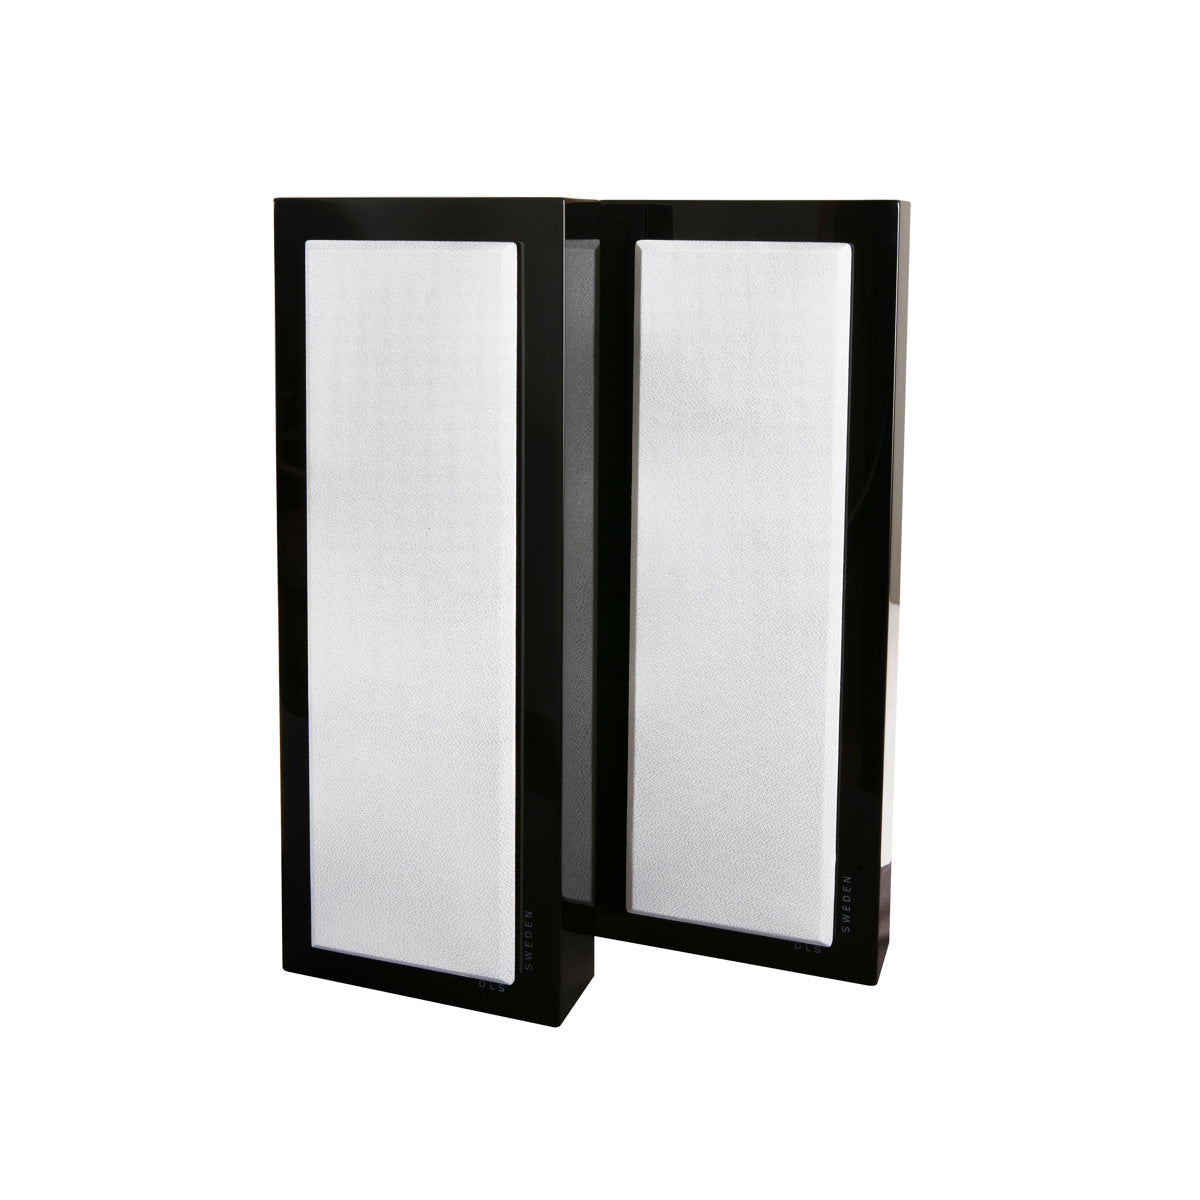 DLS Flatbox Slim Large - On-Wall Speaker - Pair - AVStore